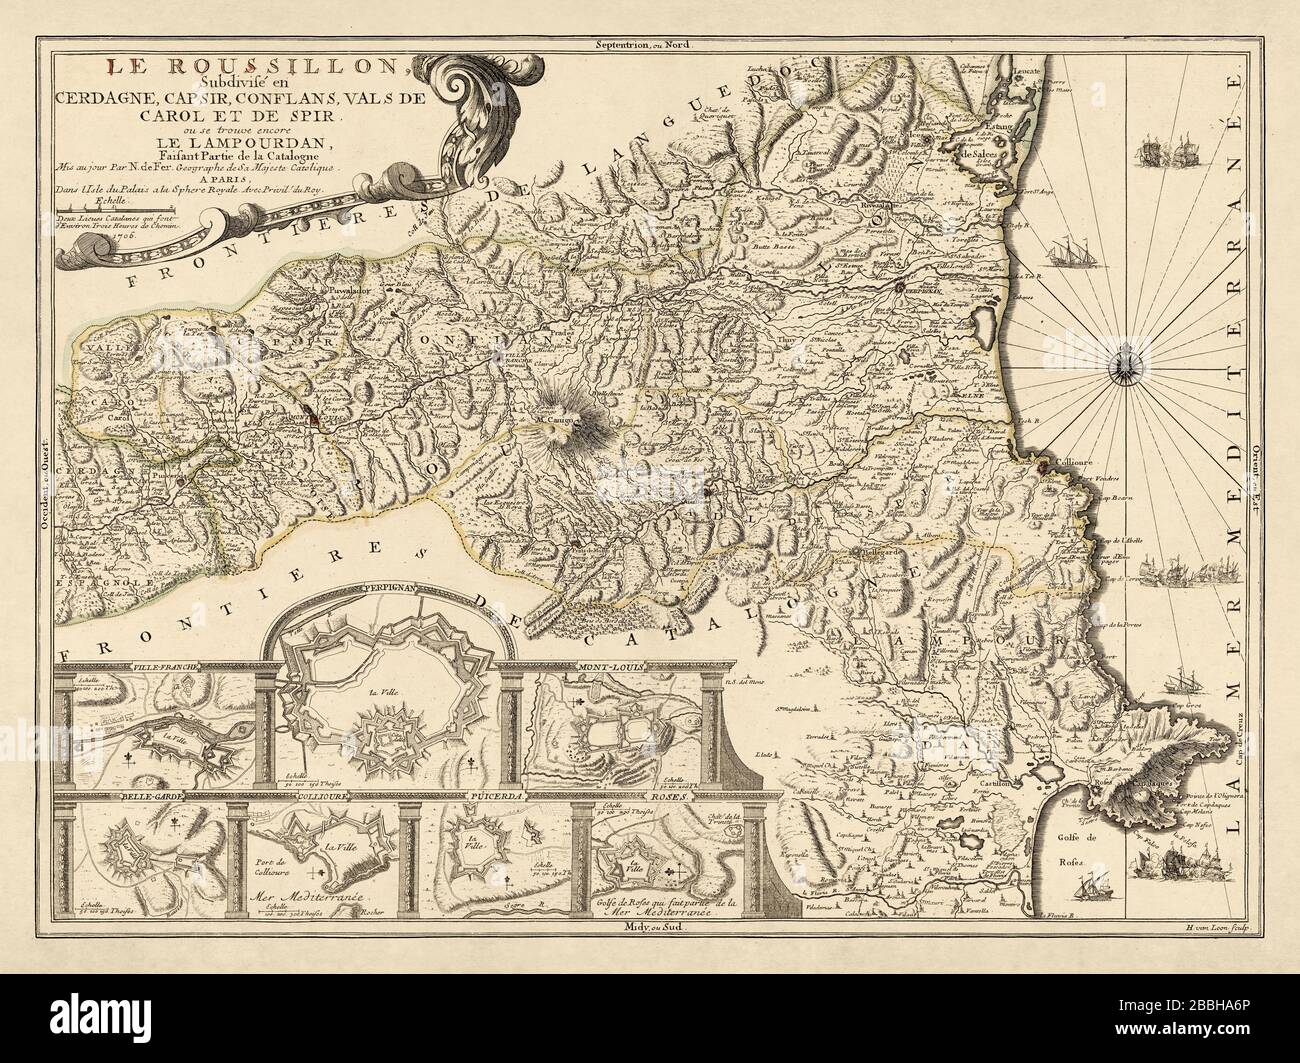 Alte Karte des Roussillon des französischen Graveurs und Kartografen Nicolas de Fer aus dem Jahr 1706 vor der französischen Revolution. Stockfoto